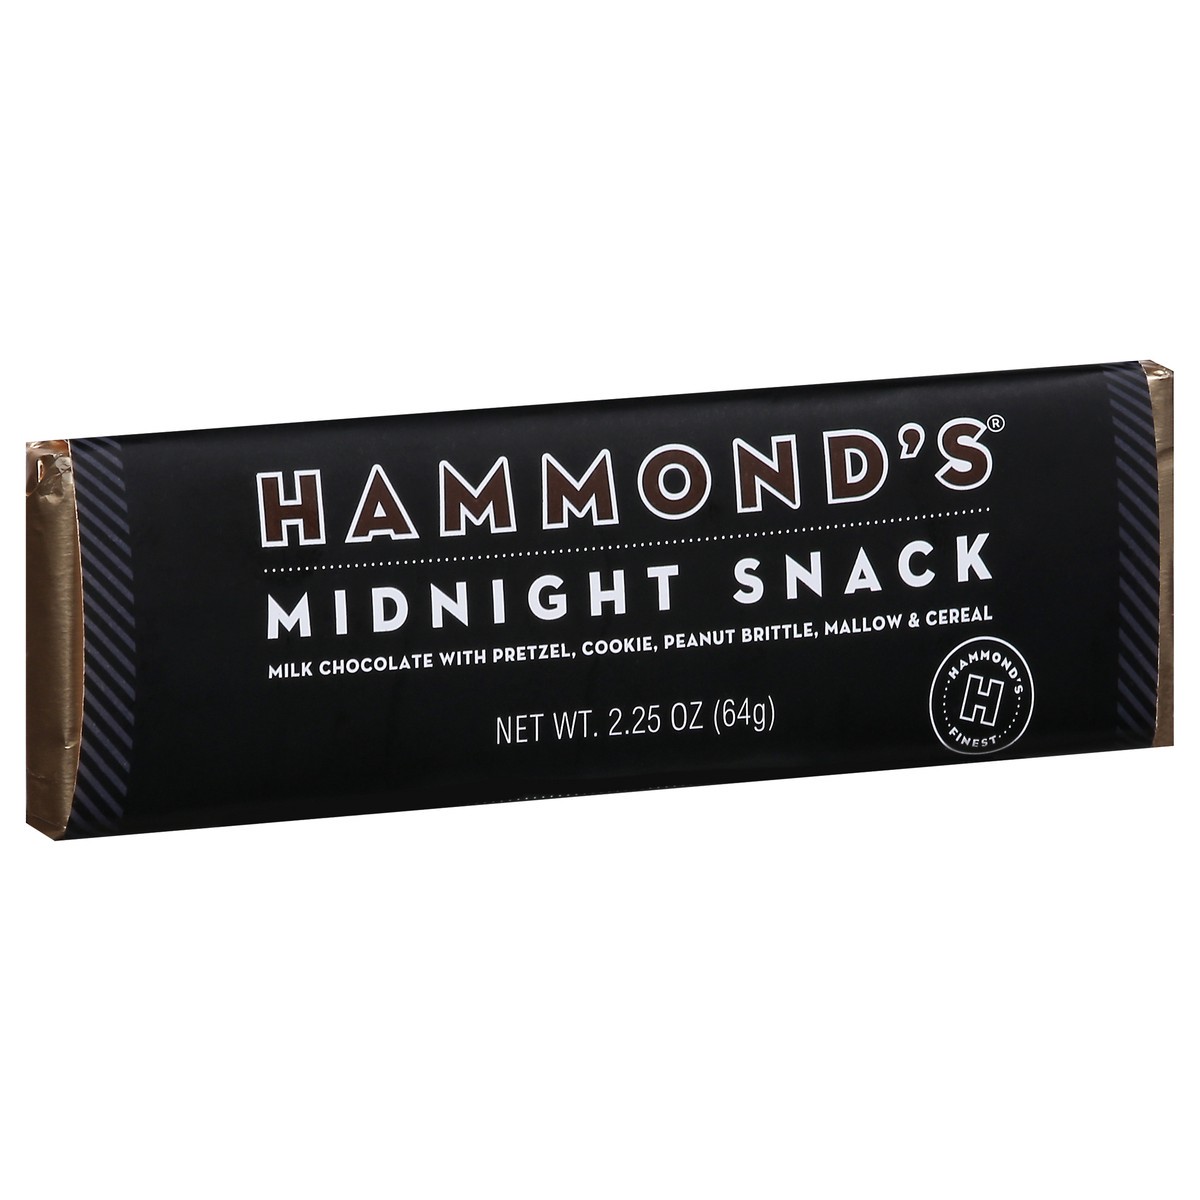 slide 2 of 9, Hammond's Midnight Snack Milk Chocolate with Pretzel, Cookie, Peanut Brittle, Mallow & Cereal 2.25 oz, 2.25 oz